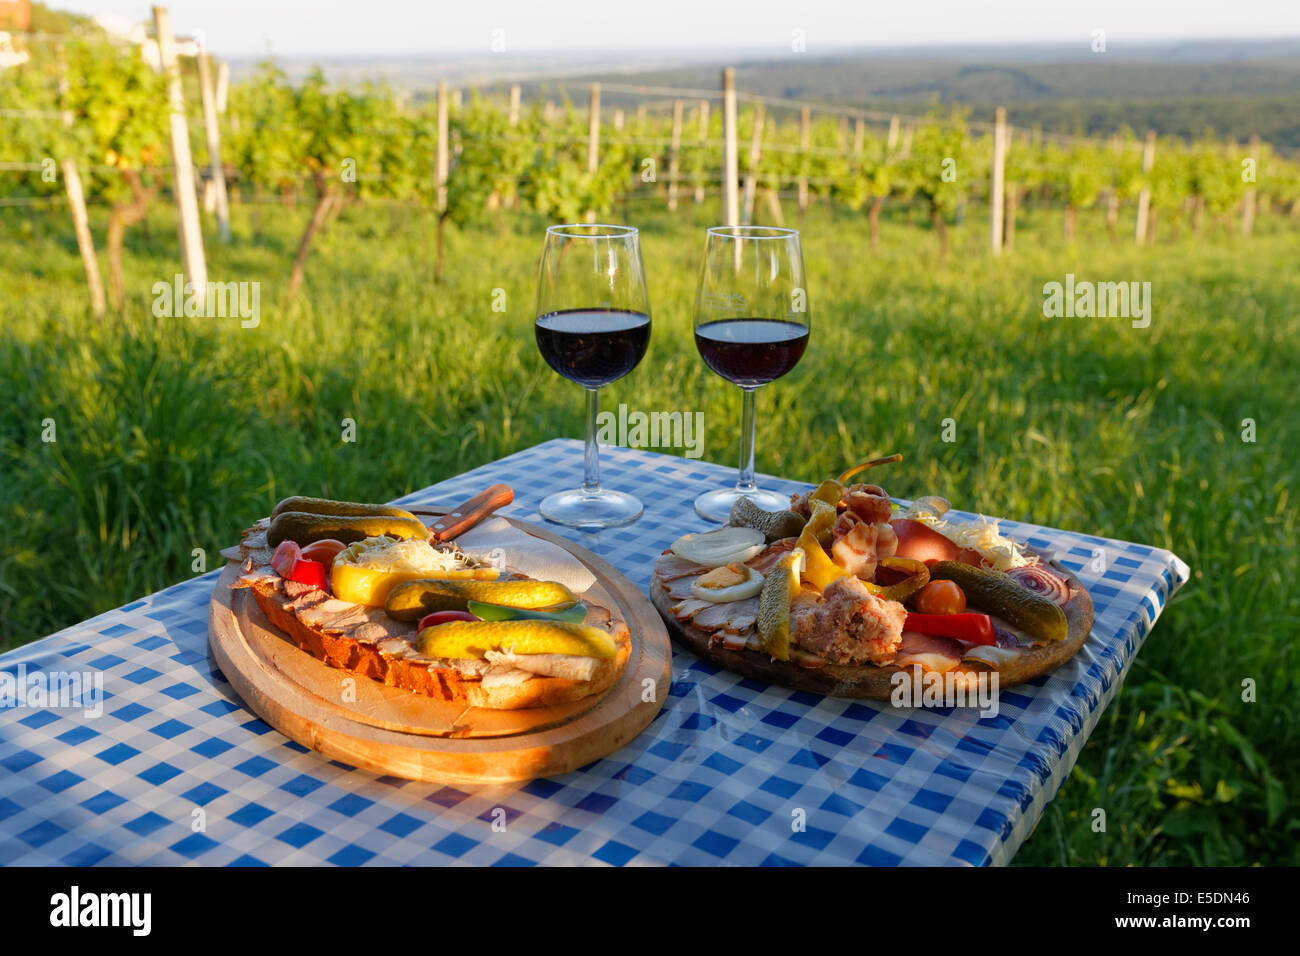 Austria, Burgenland, Oberwart distretto, Eisenberg an der Pinka, rosso bicchieri da vino, cumino arrosto e del vignaiolo-piastra sulla tabella Foto Stock